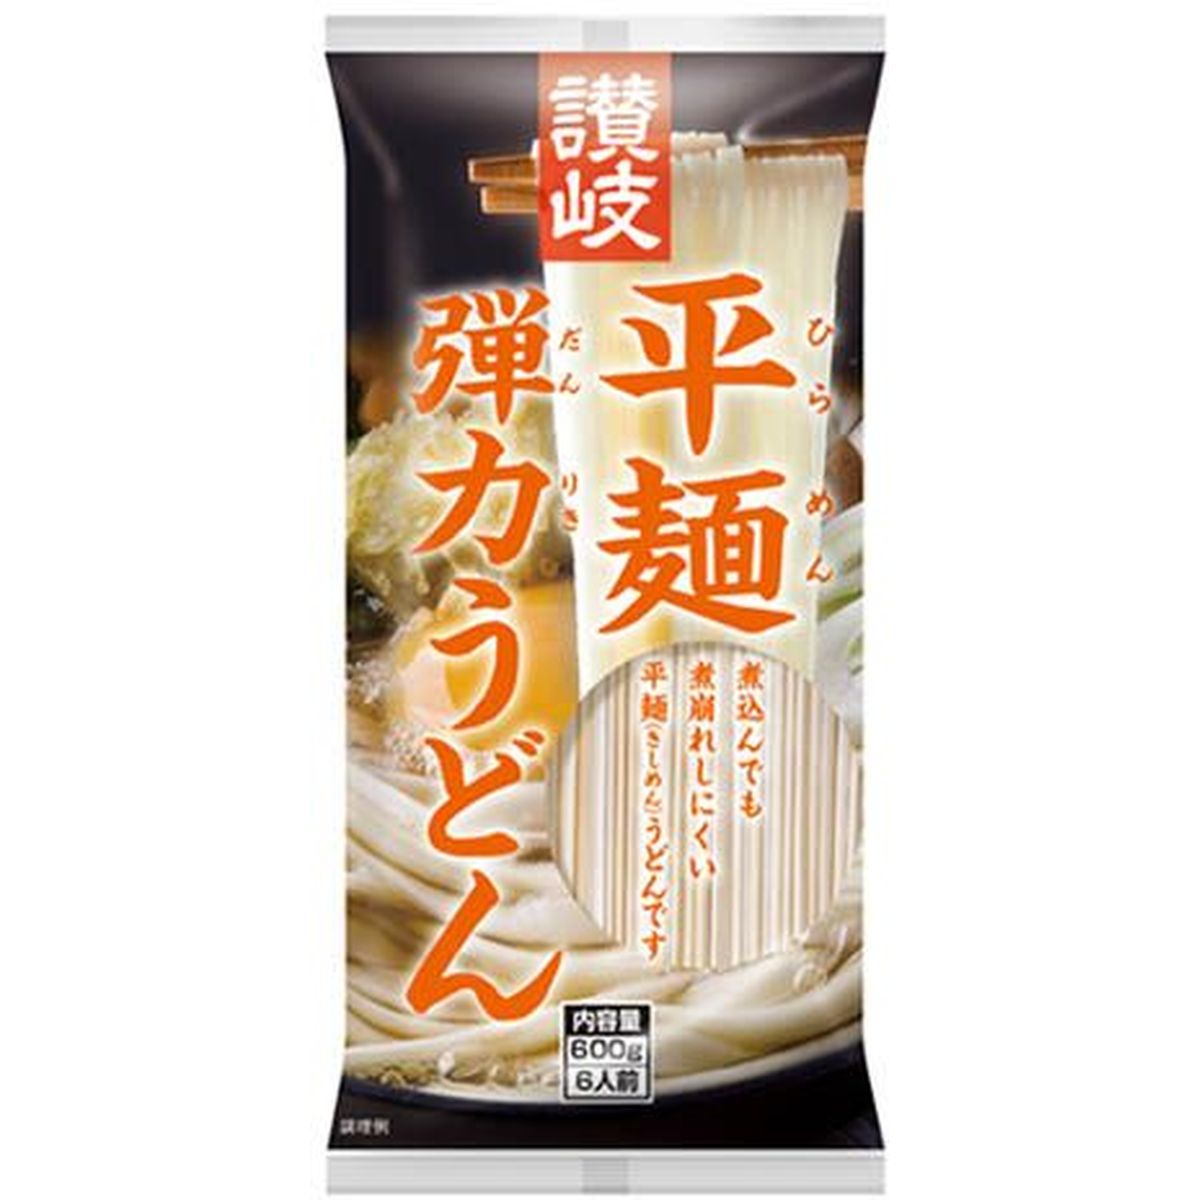 【20個入リ】サヌキシセイ 讃岐平麺弾力ウドン 600g